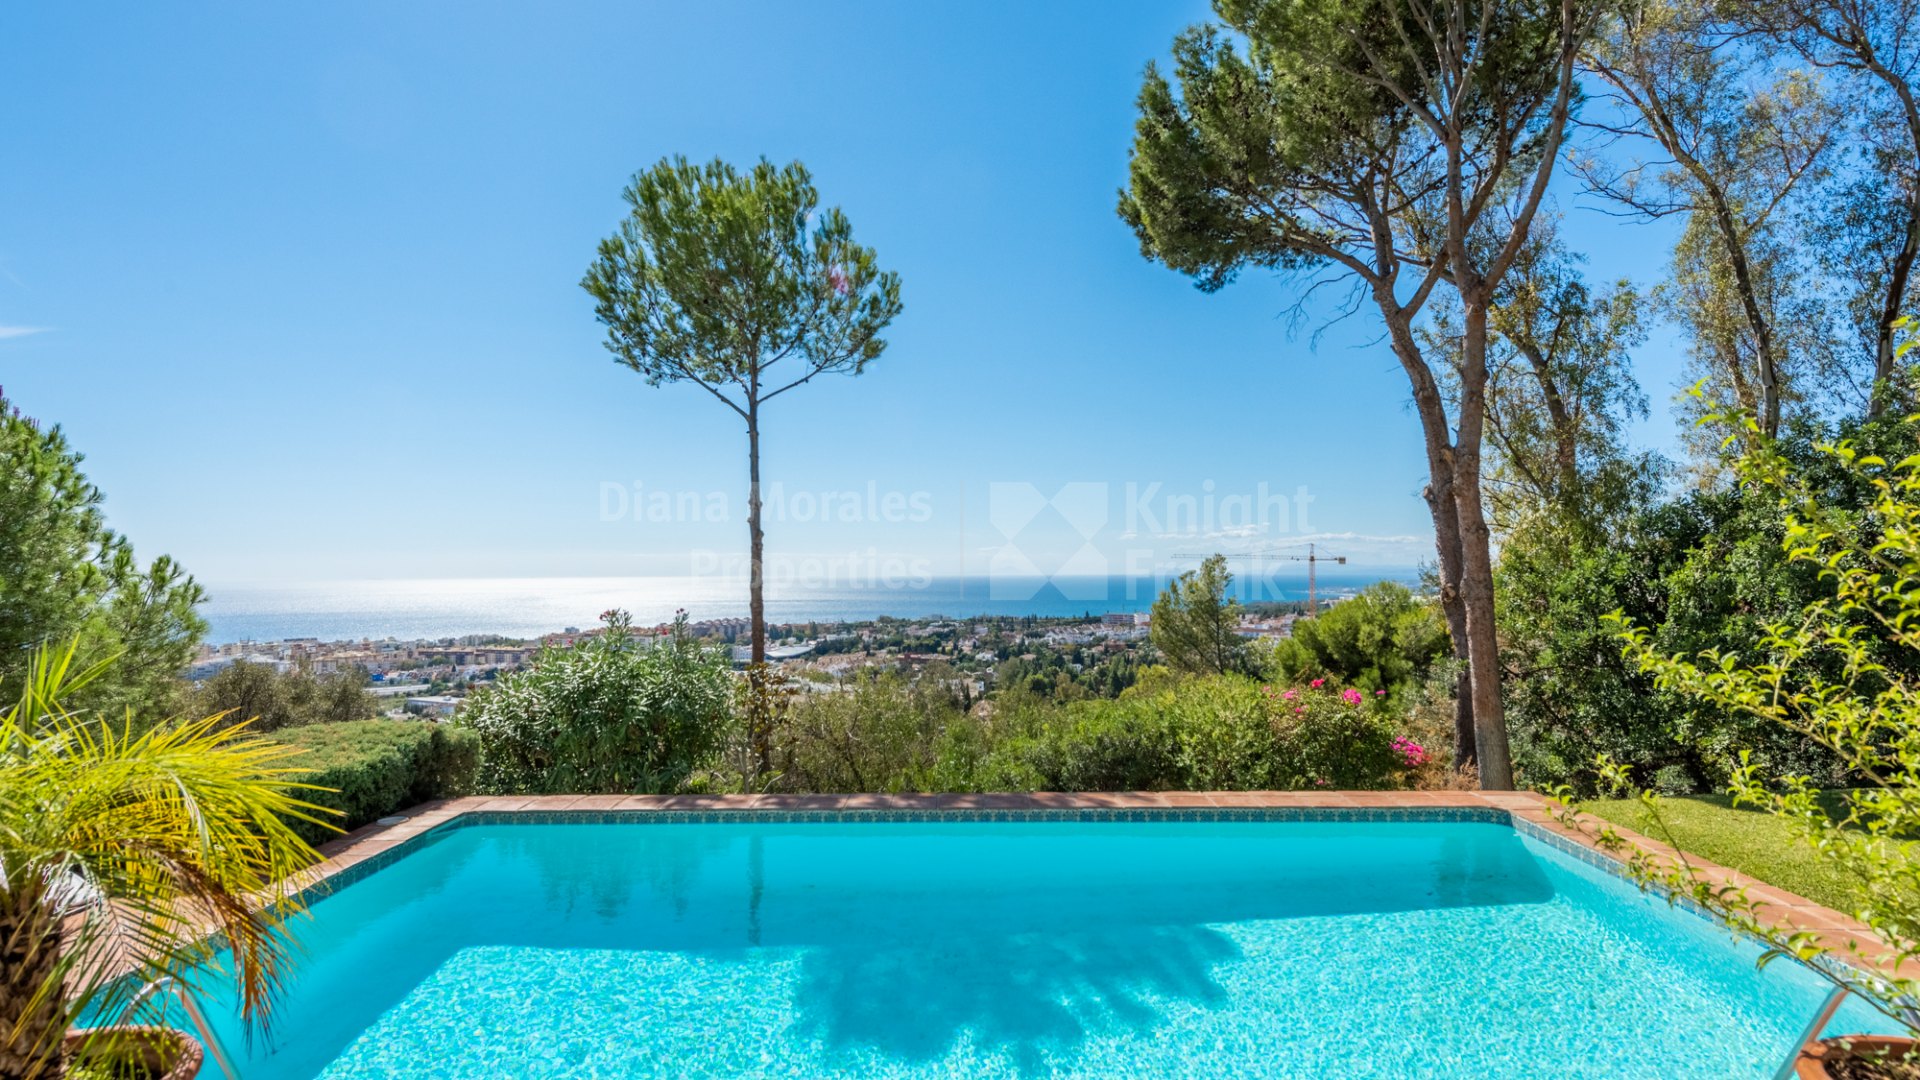 La Montua, Villa with panoramic views in the hills of Marbella